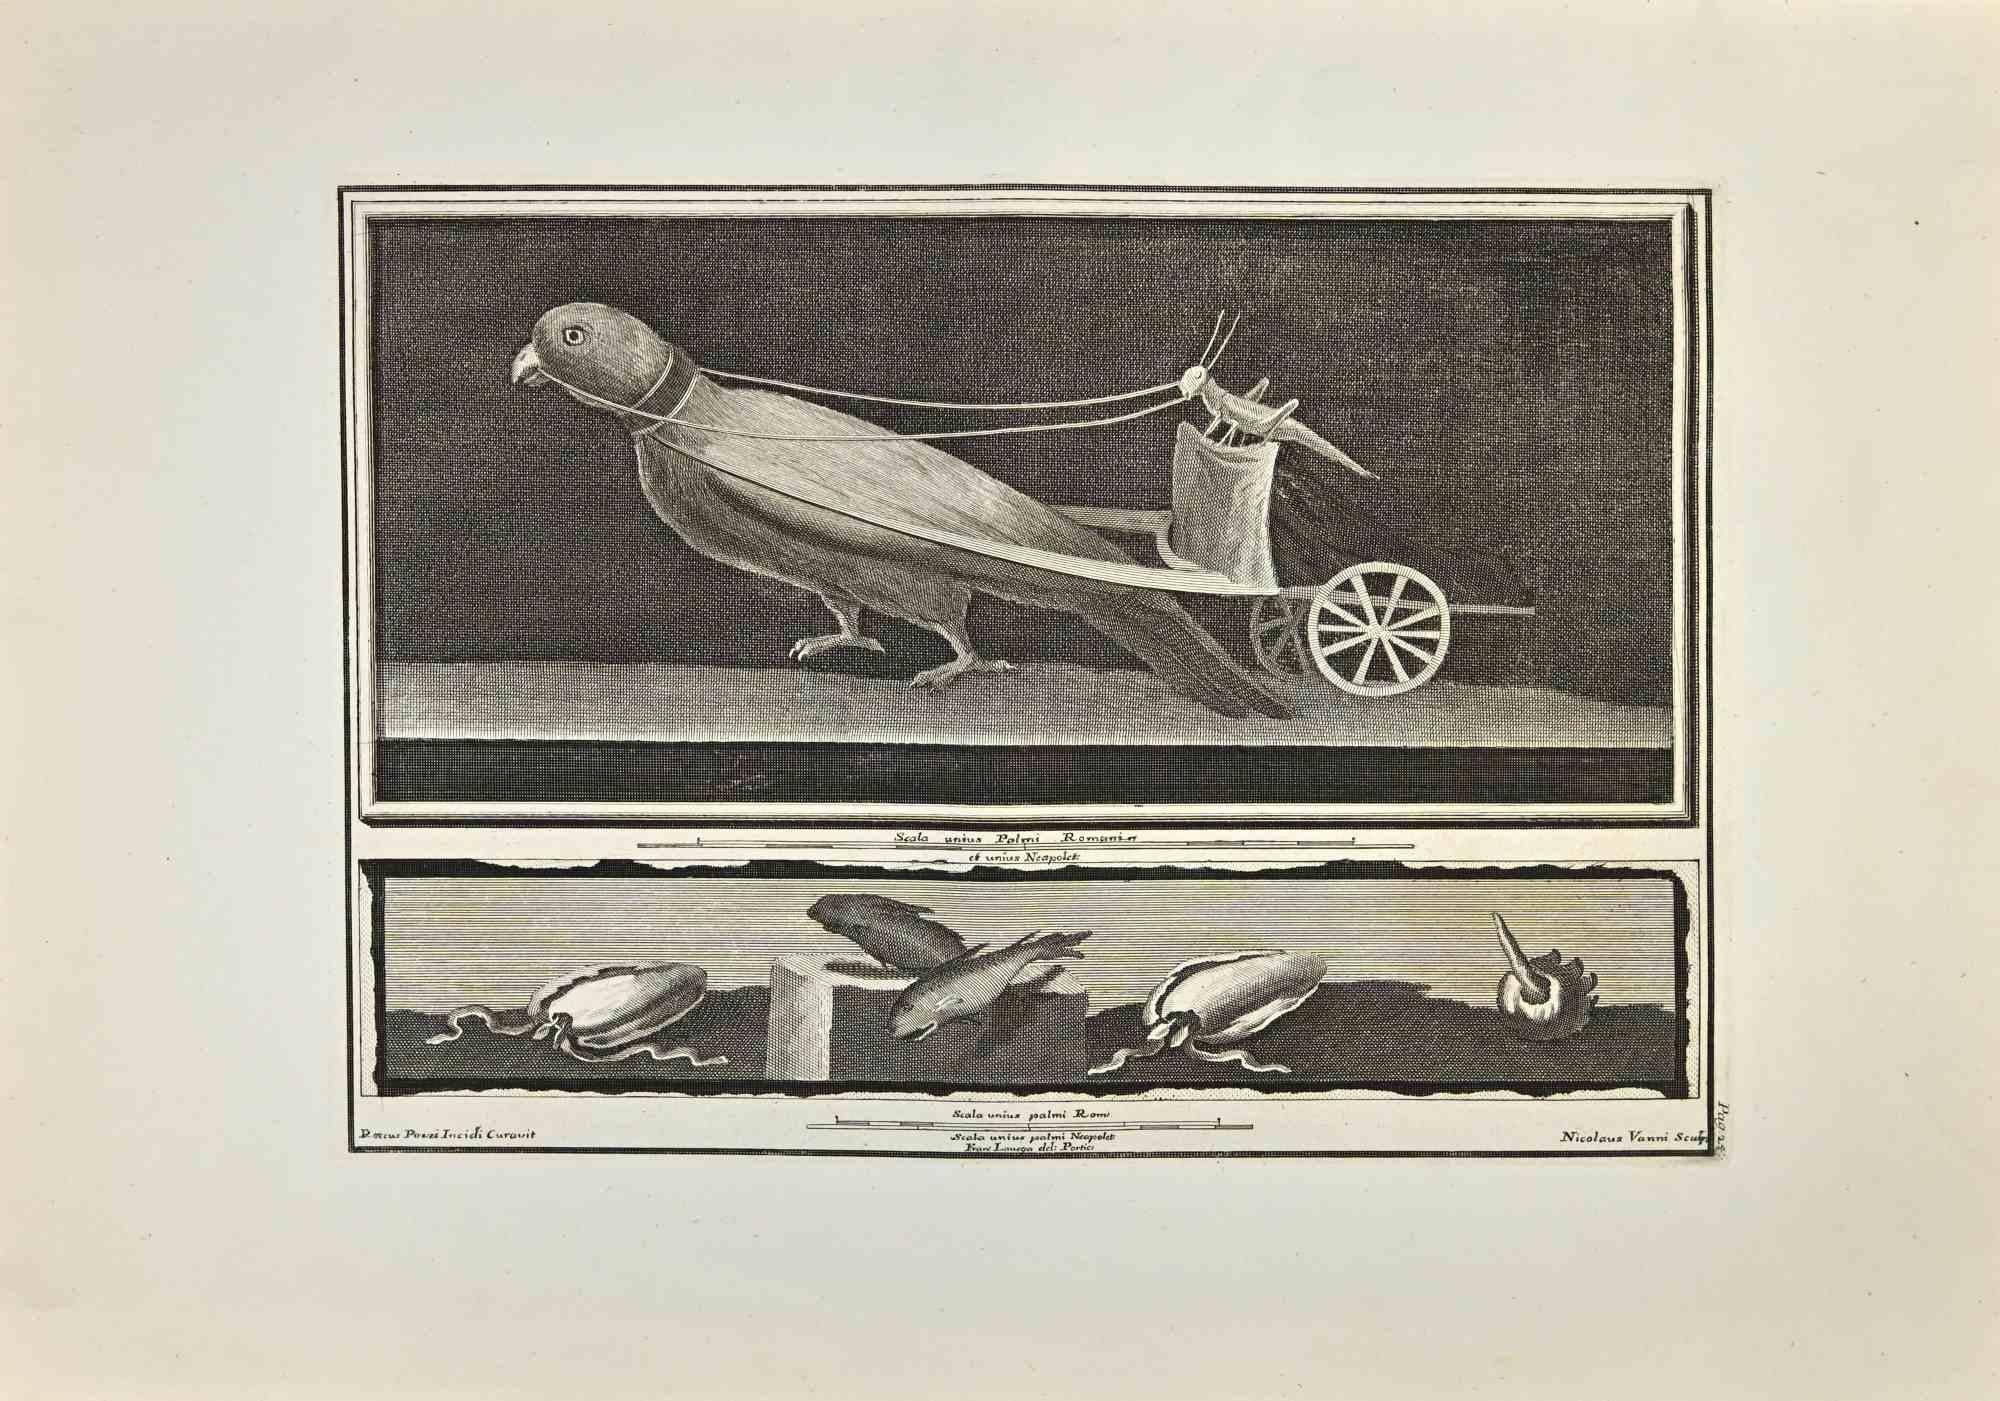 Grasshopper Driving a Parrot-Cart from "Antiquities of Herculaneum" est une gravure sur papier réalisée par Nicola Vanni d'après Roccus Pozzi au 18e siècle.

Signé sur la plaque.

Bon état avec quelques pliures.

La gravure appartient à la suite